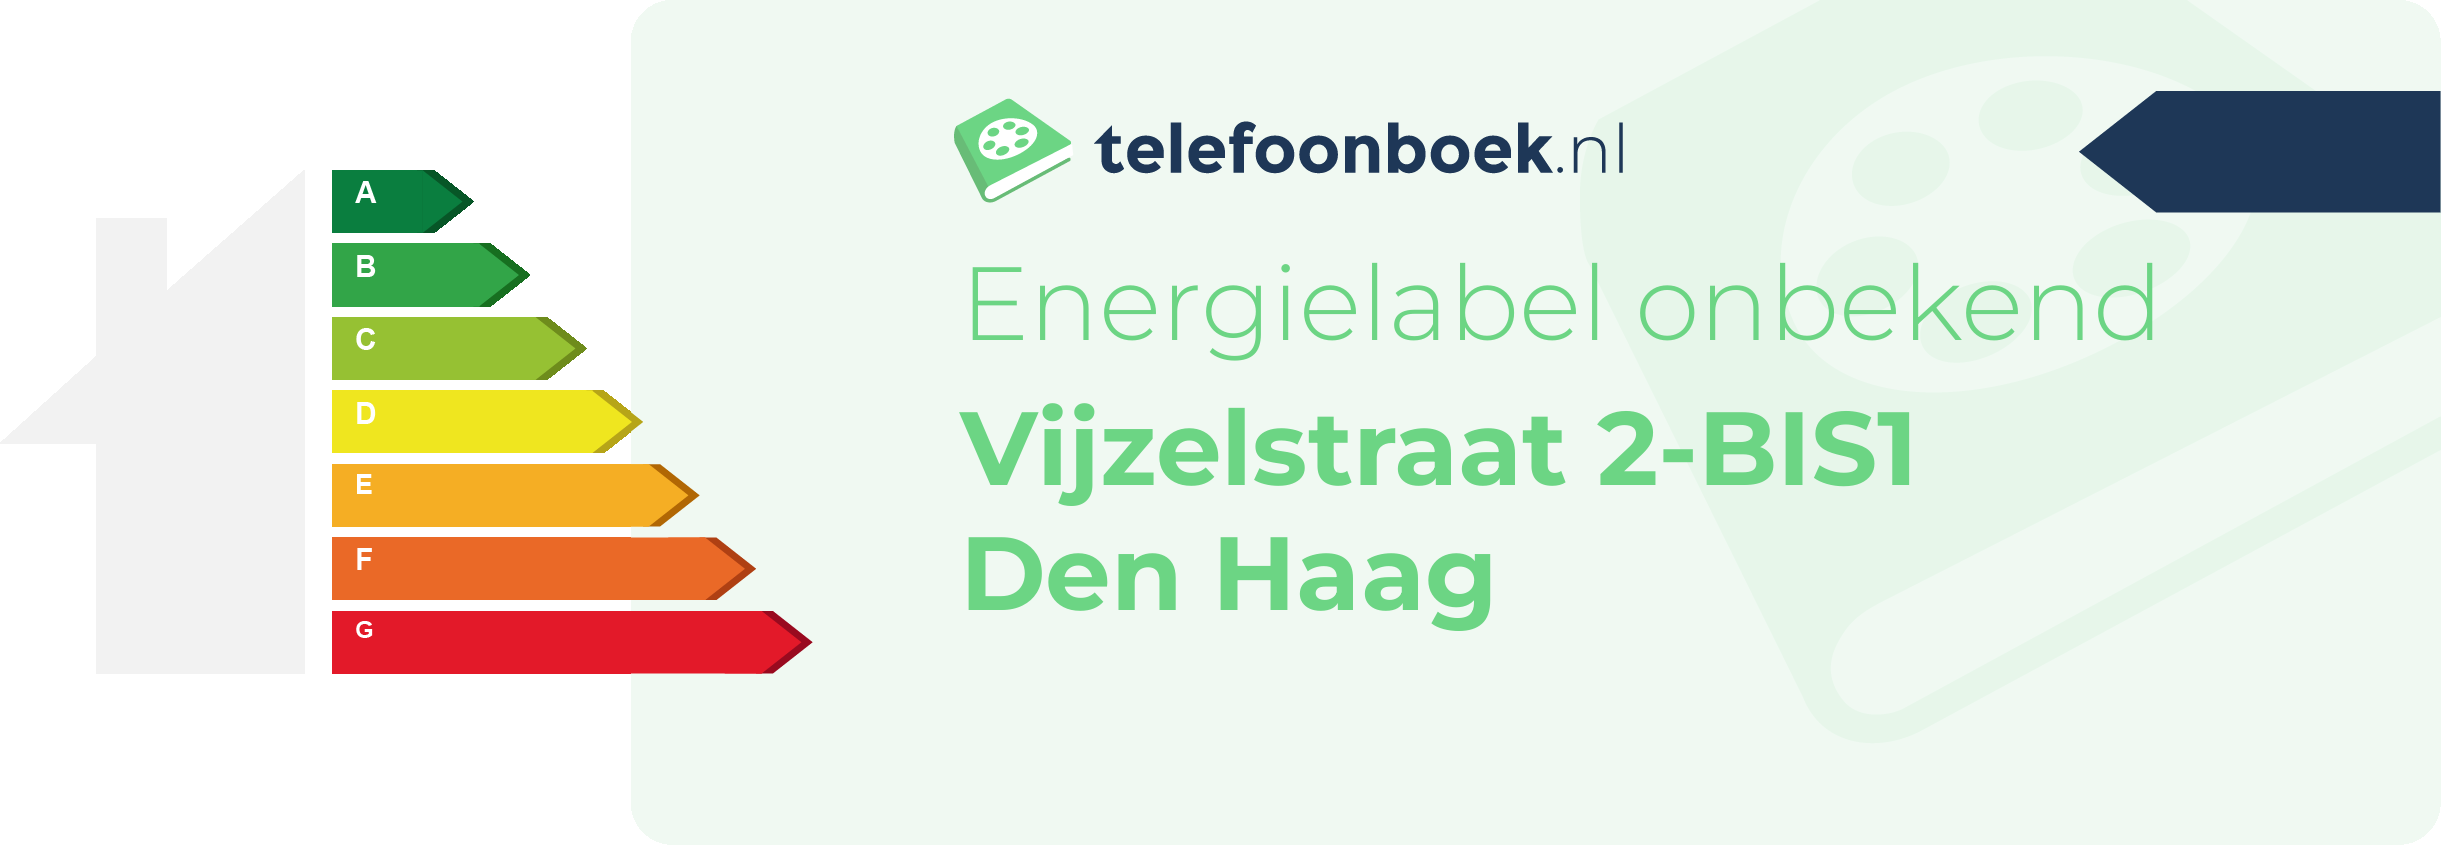 Energielabel Vijzelstraat 2-BIS1 Den Haag